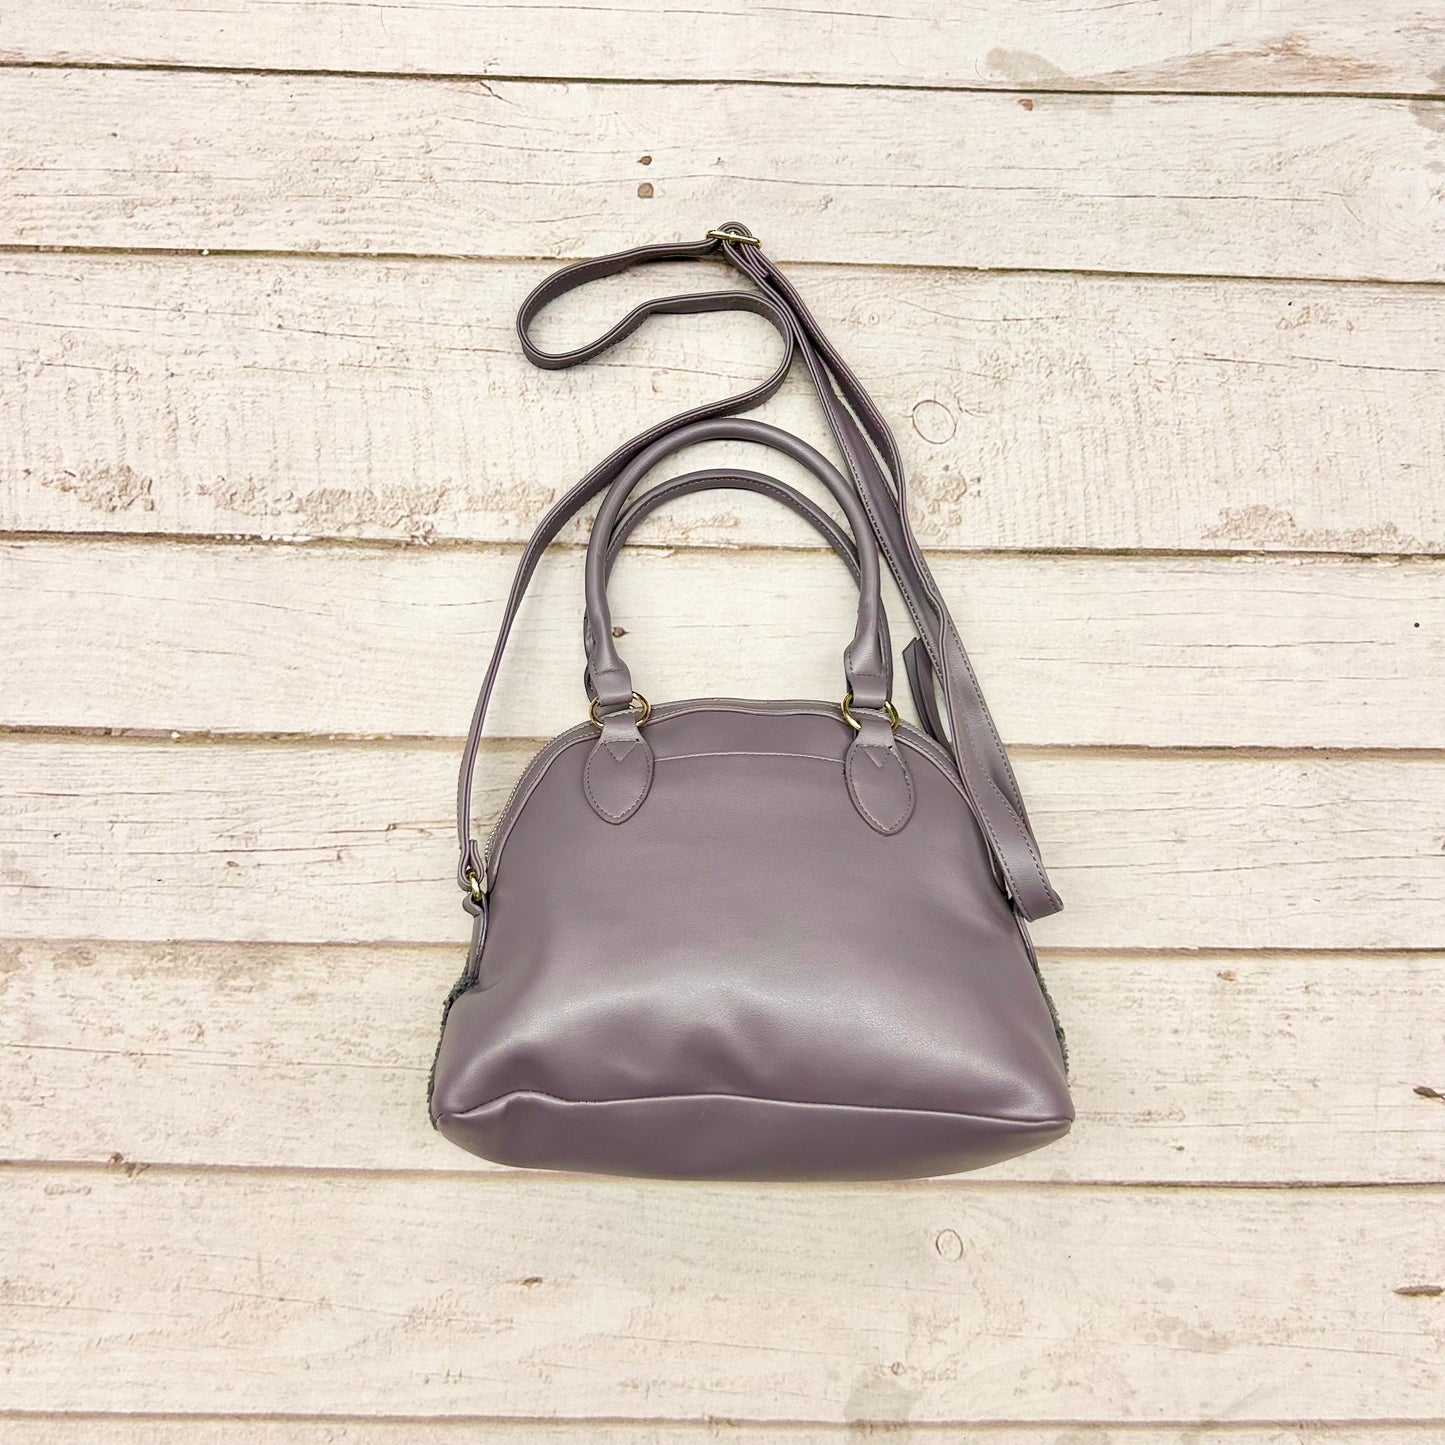 Handbag By Juicy Couture  Size: Medium